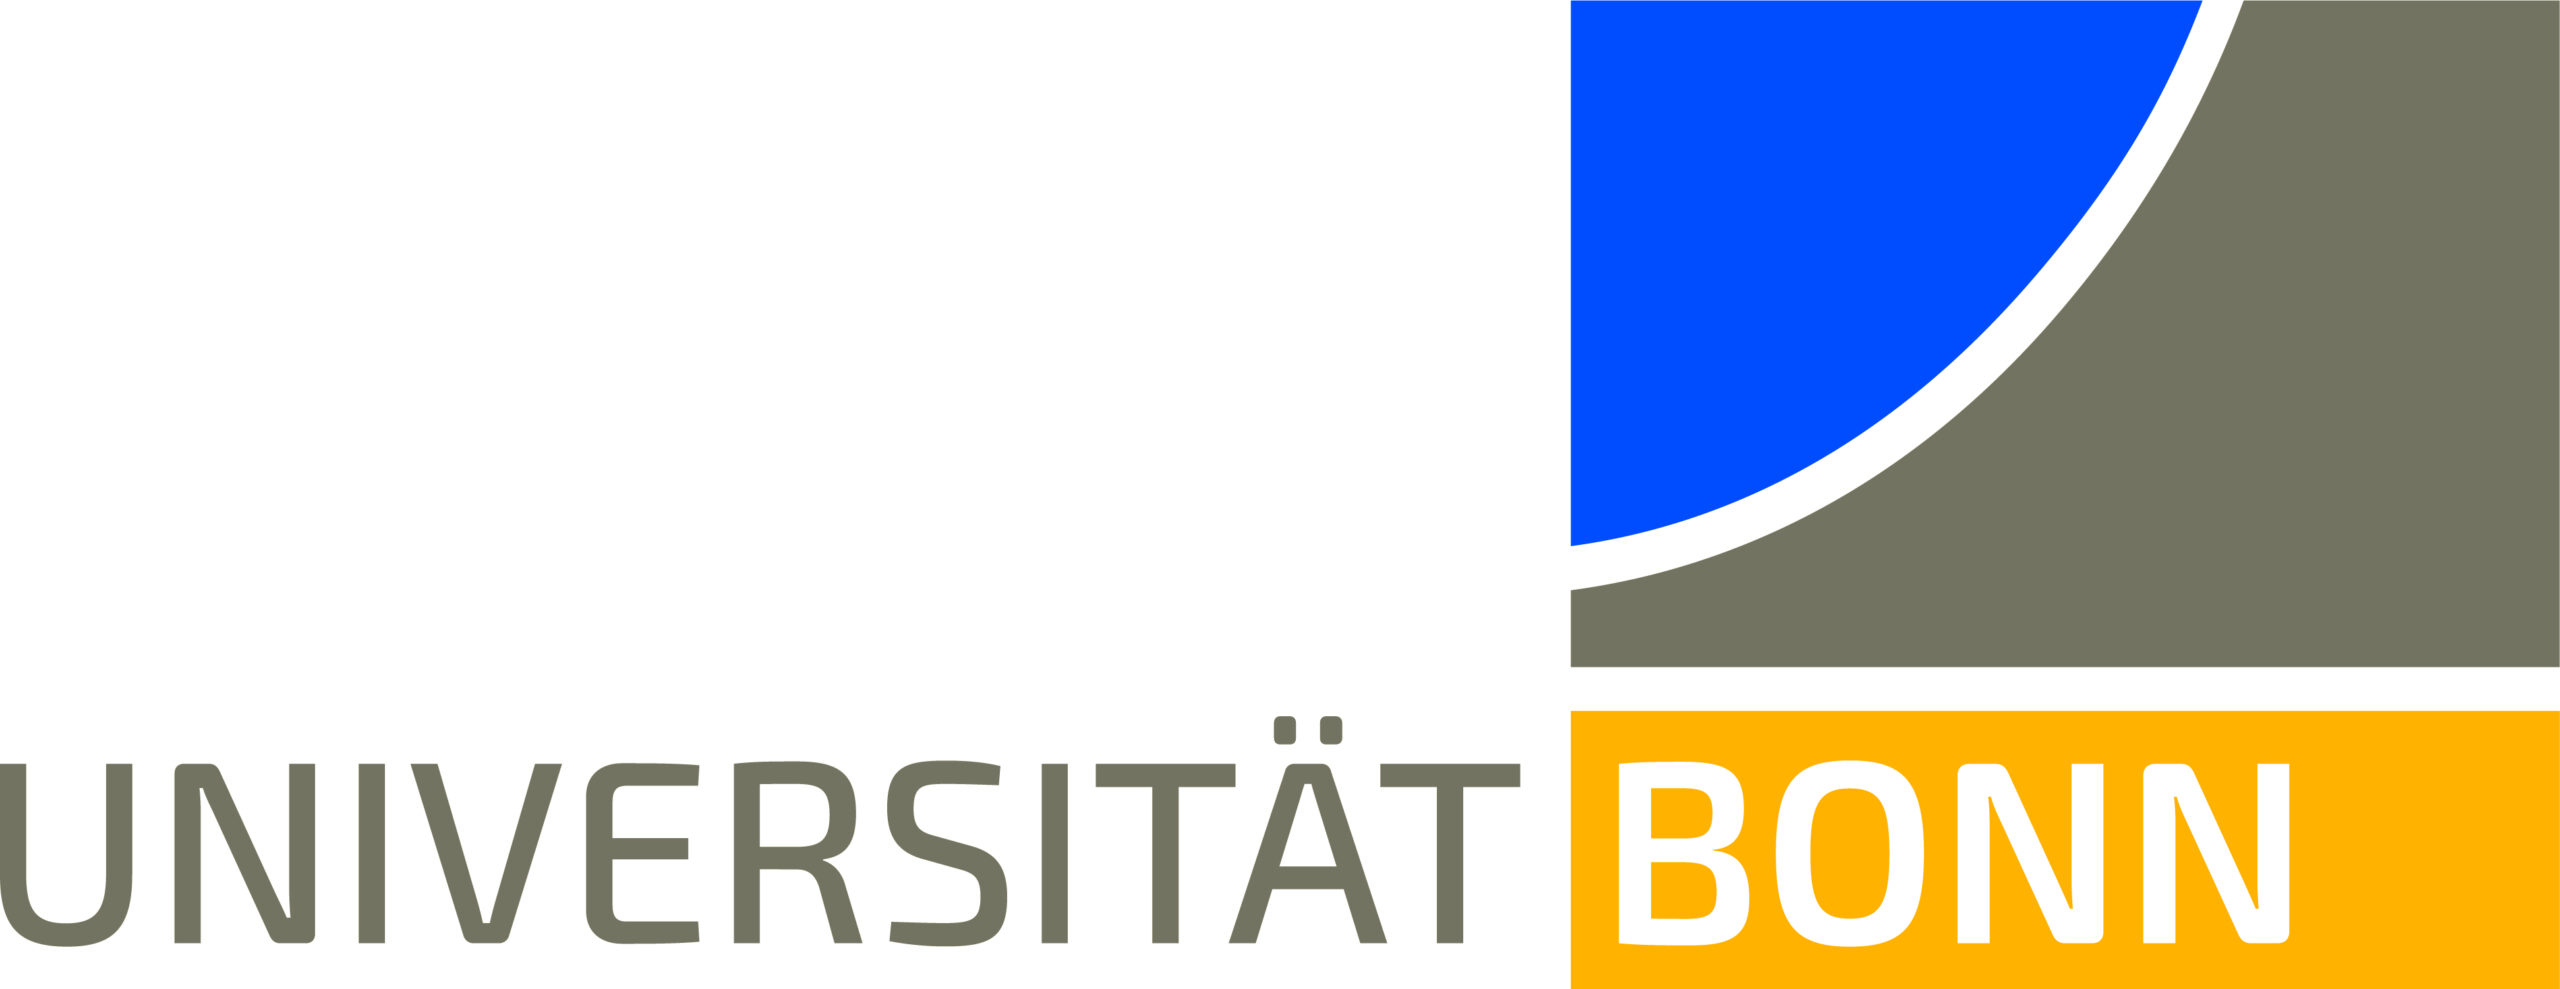 UNI_Bonn_Logo_Standard_RZ_Office